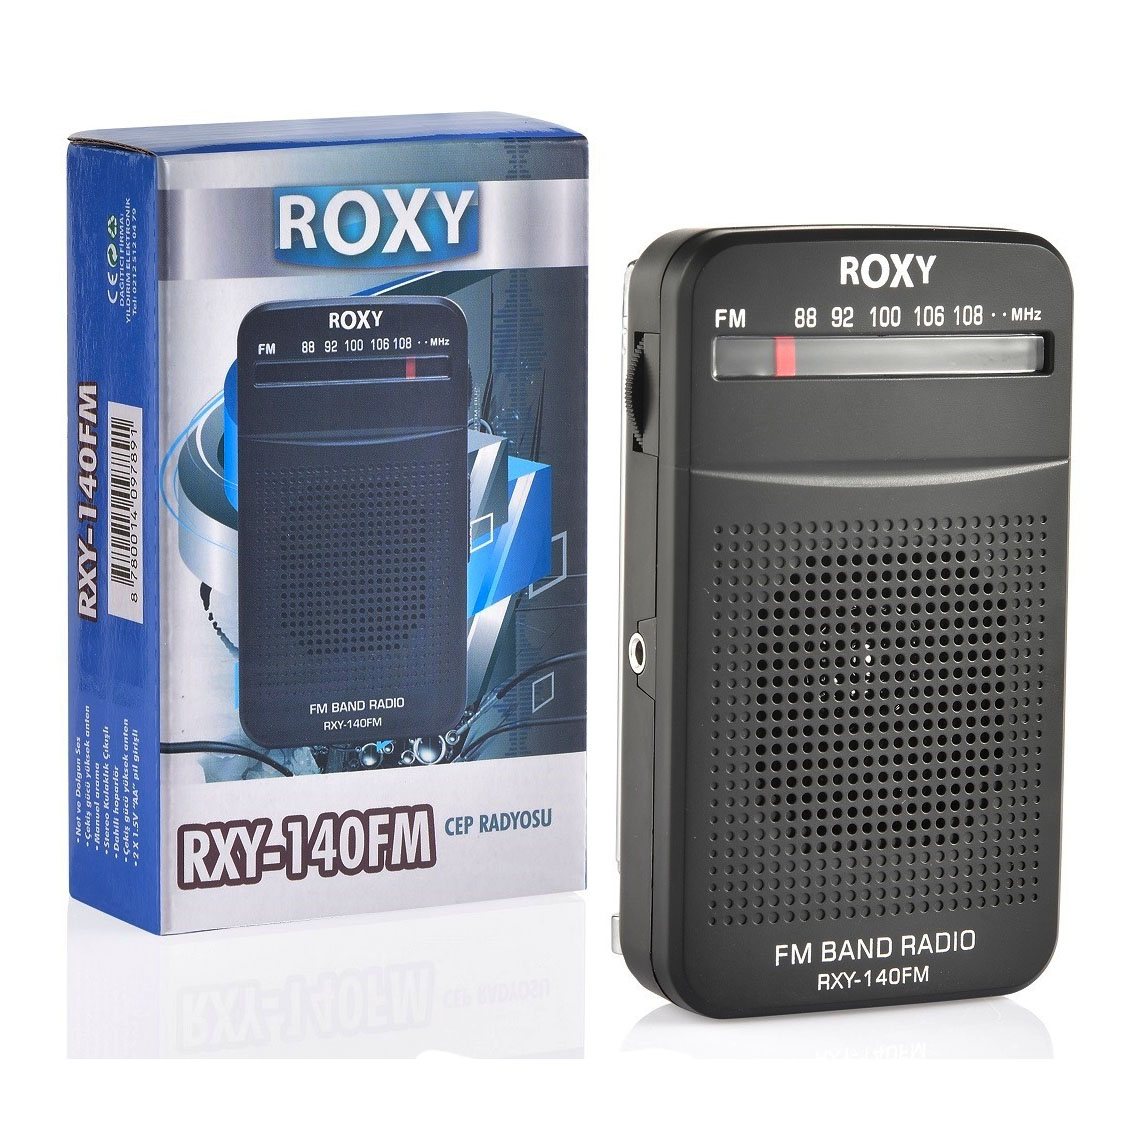 Roxy%20RXY-140%20FM%20Cep%20Radyosu%20(Deprem%20Radyosu)